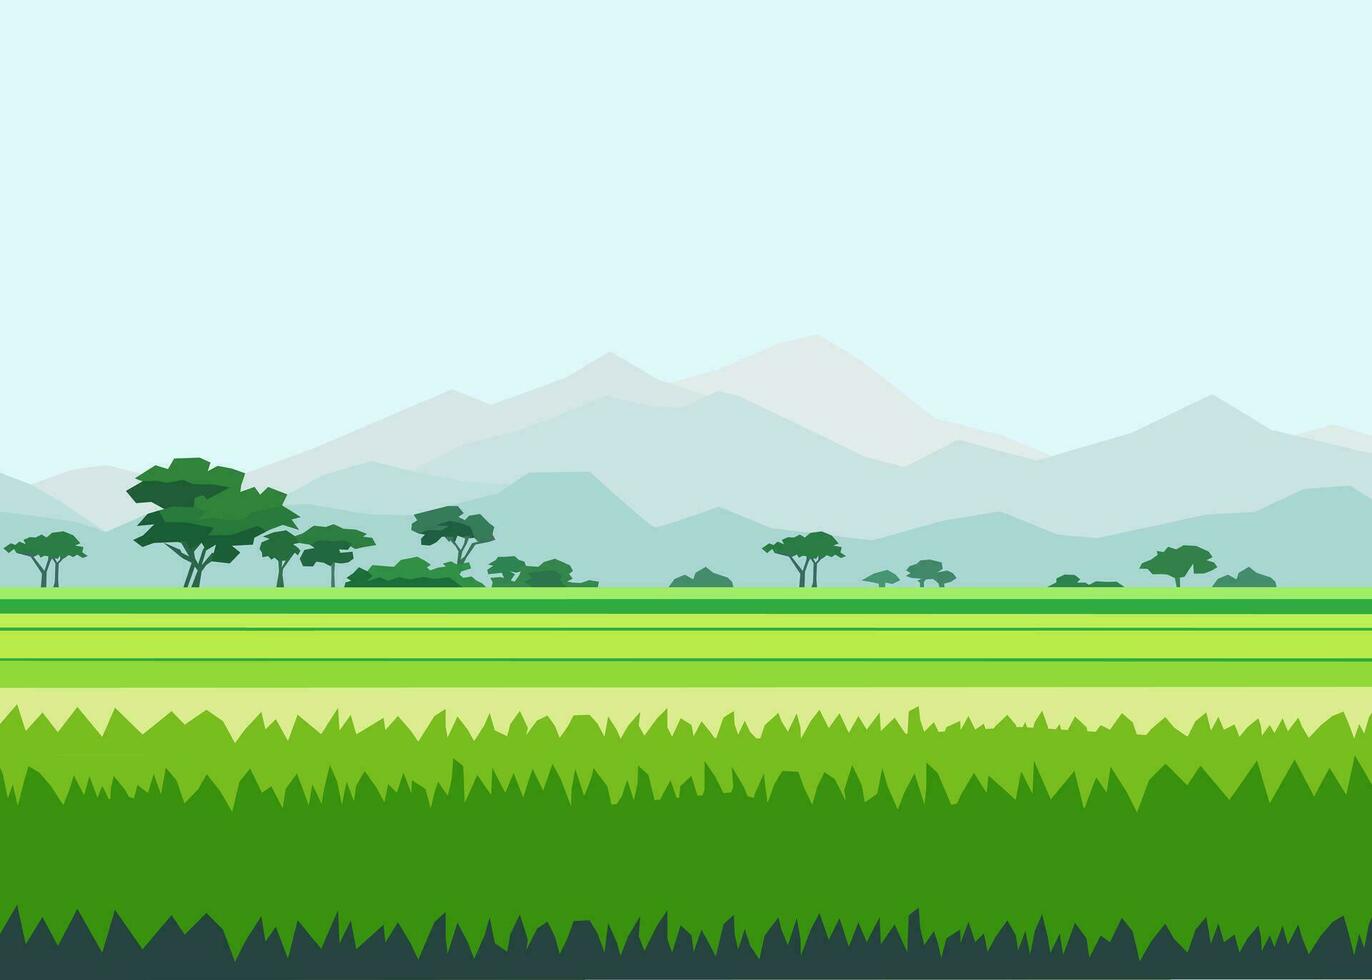 skön risfält landskap med bergen vektor illustration